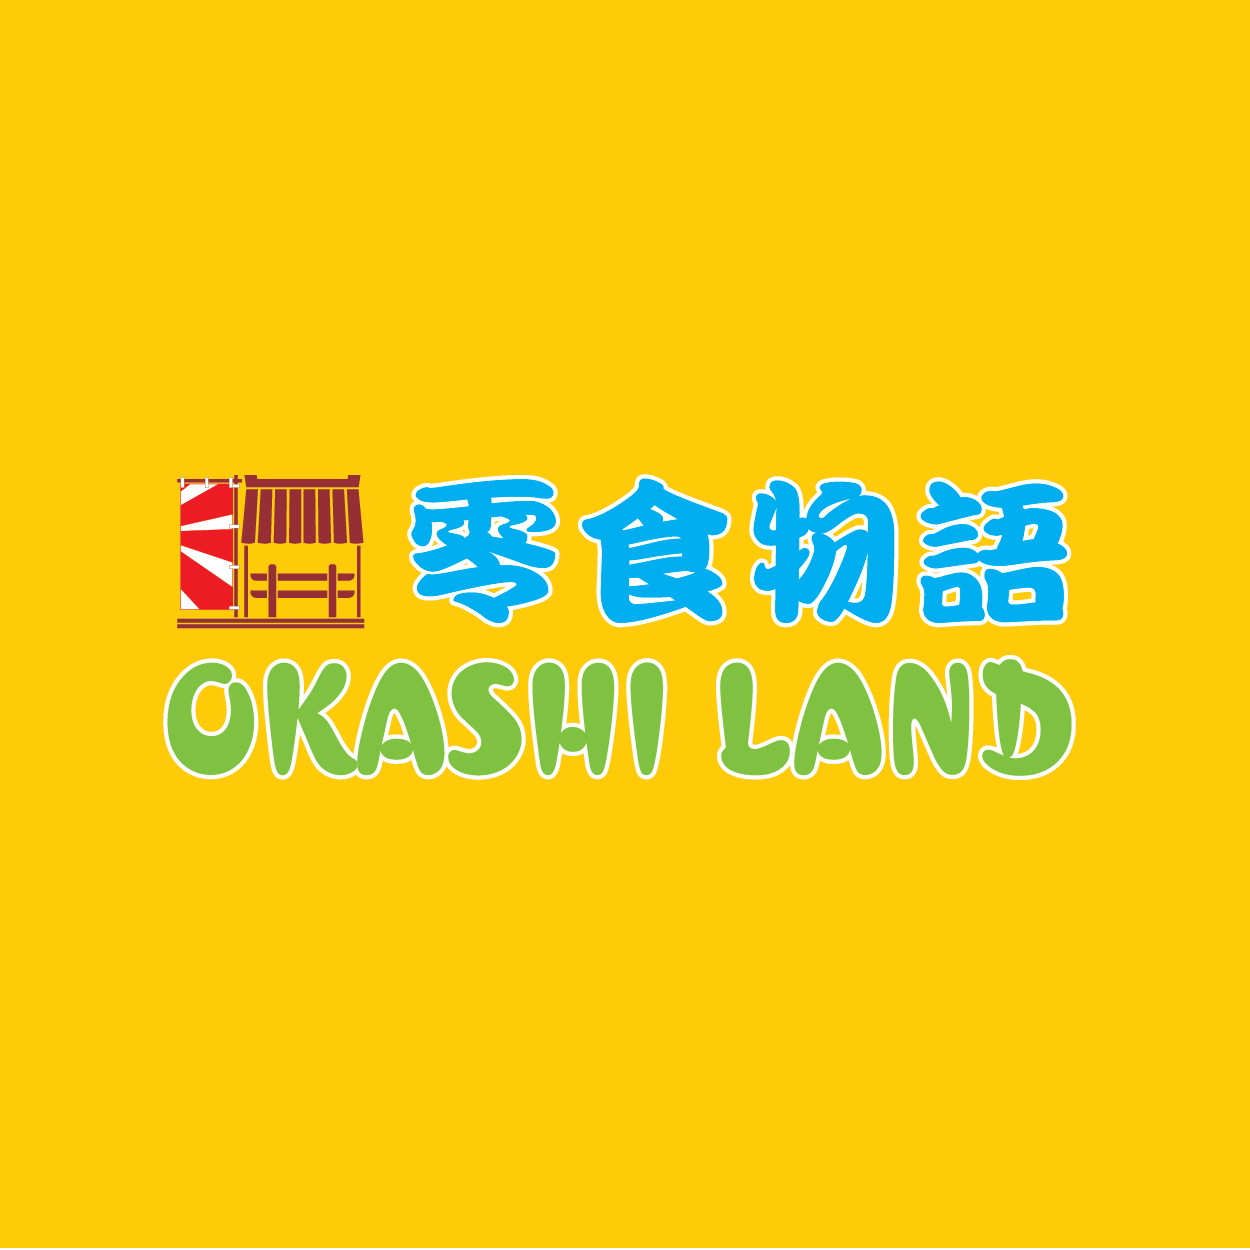 OKASHI LAND